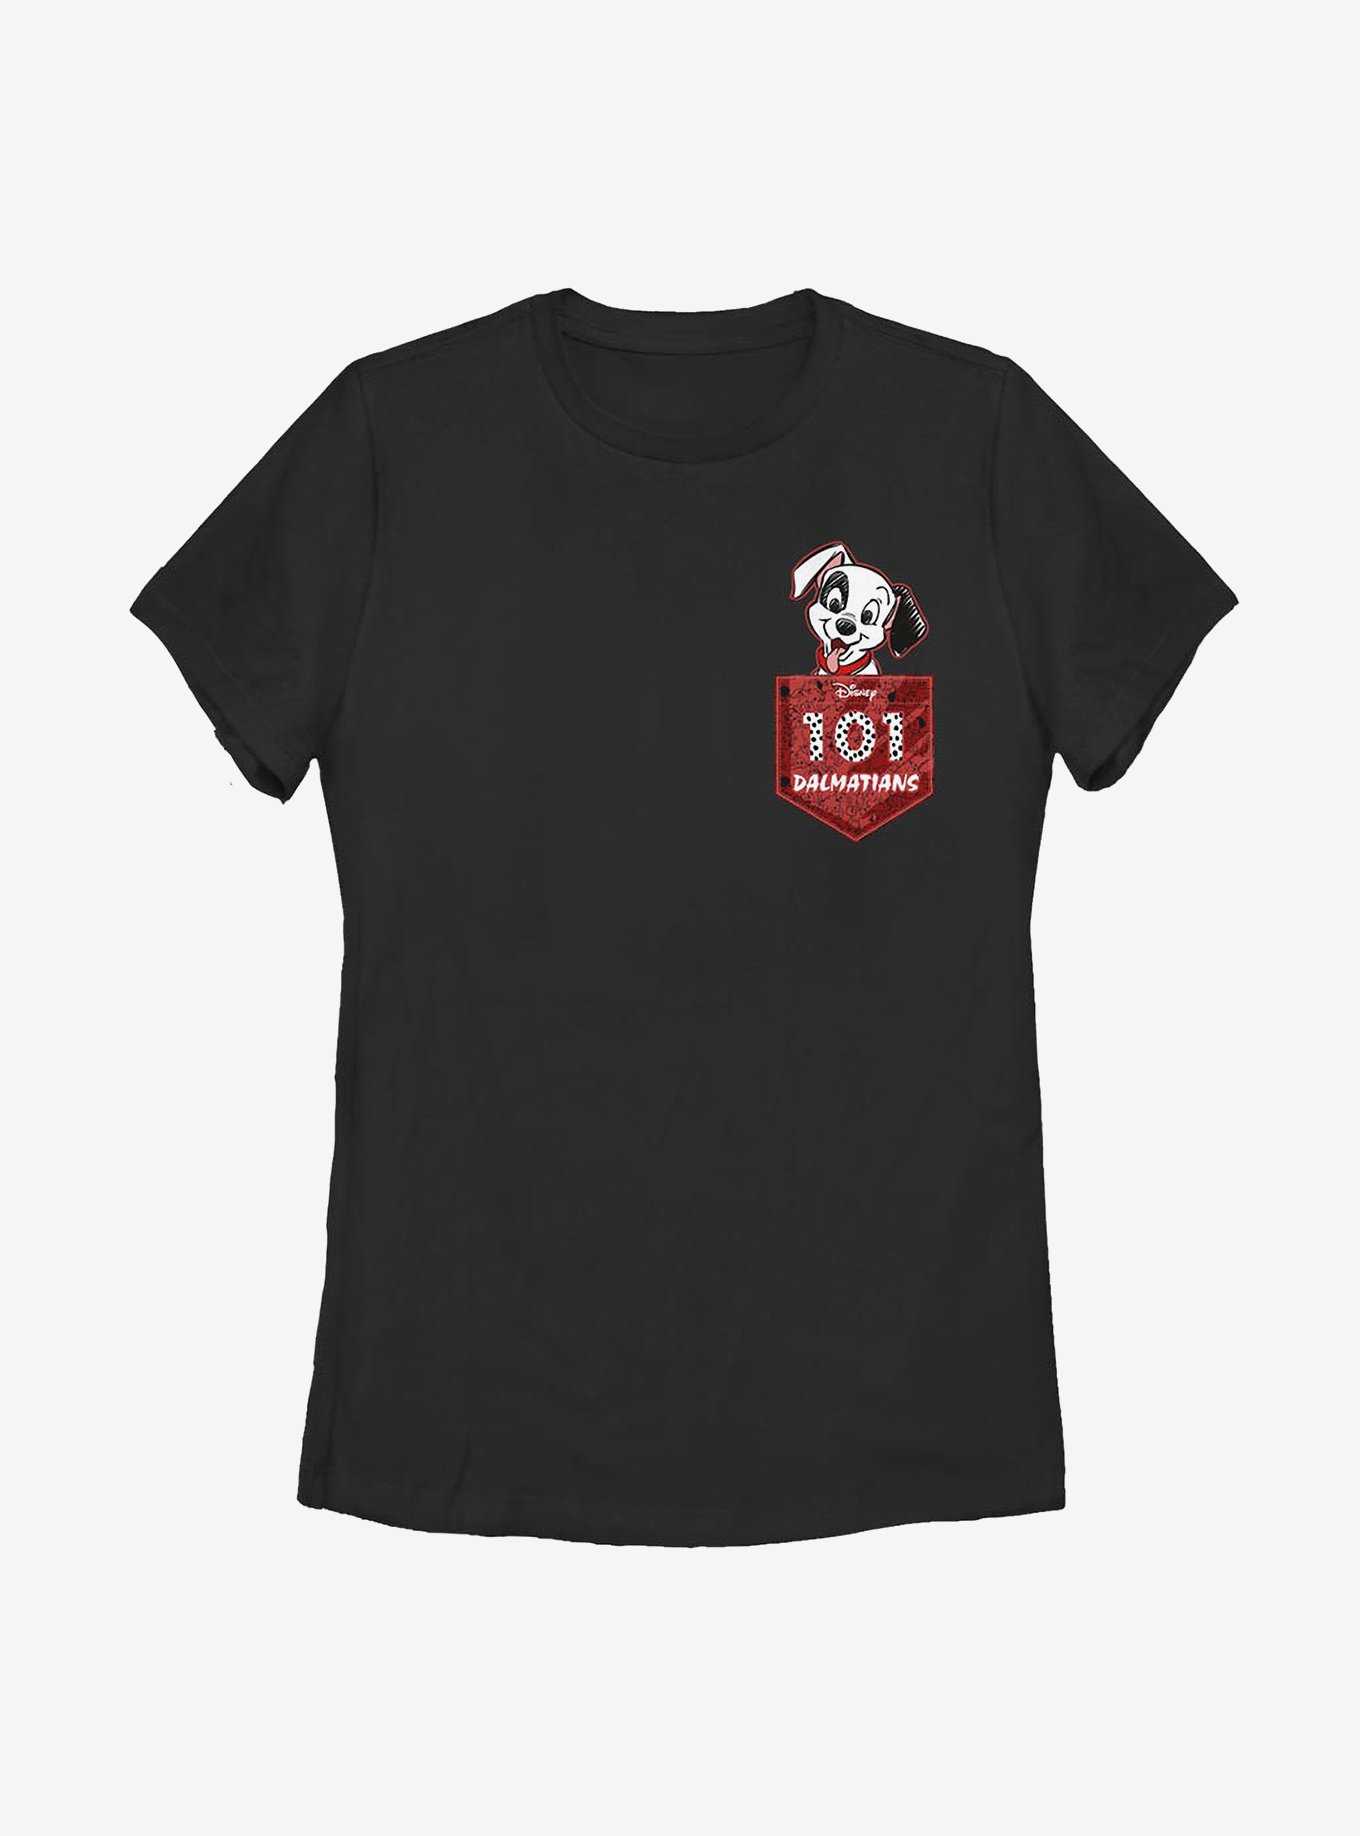 Disney 101 Dalmatians Faux Pocket Puppy Womens T-Shirt, , hi-res